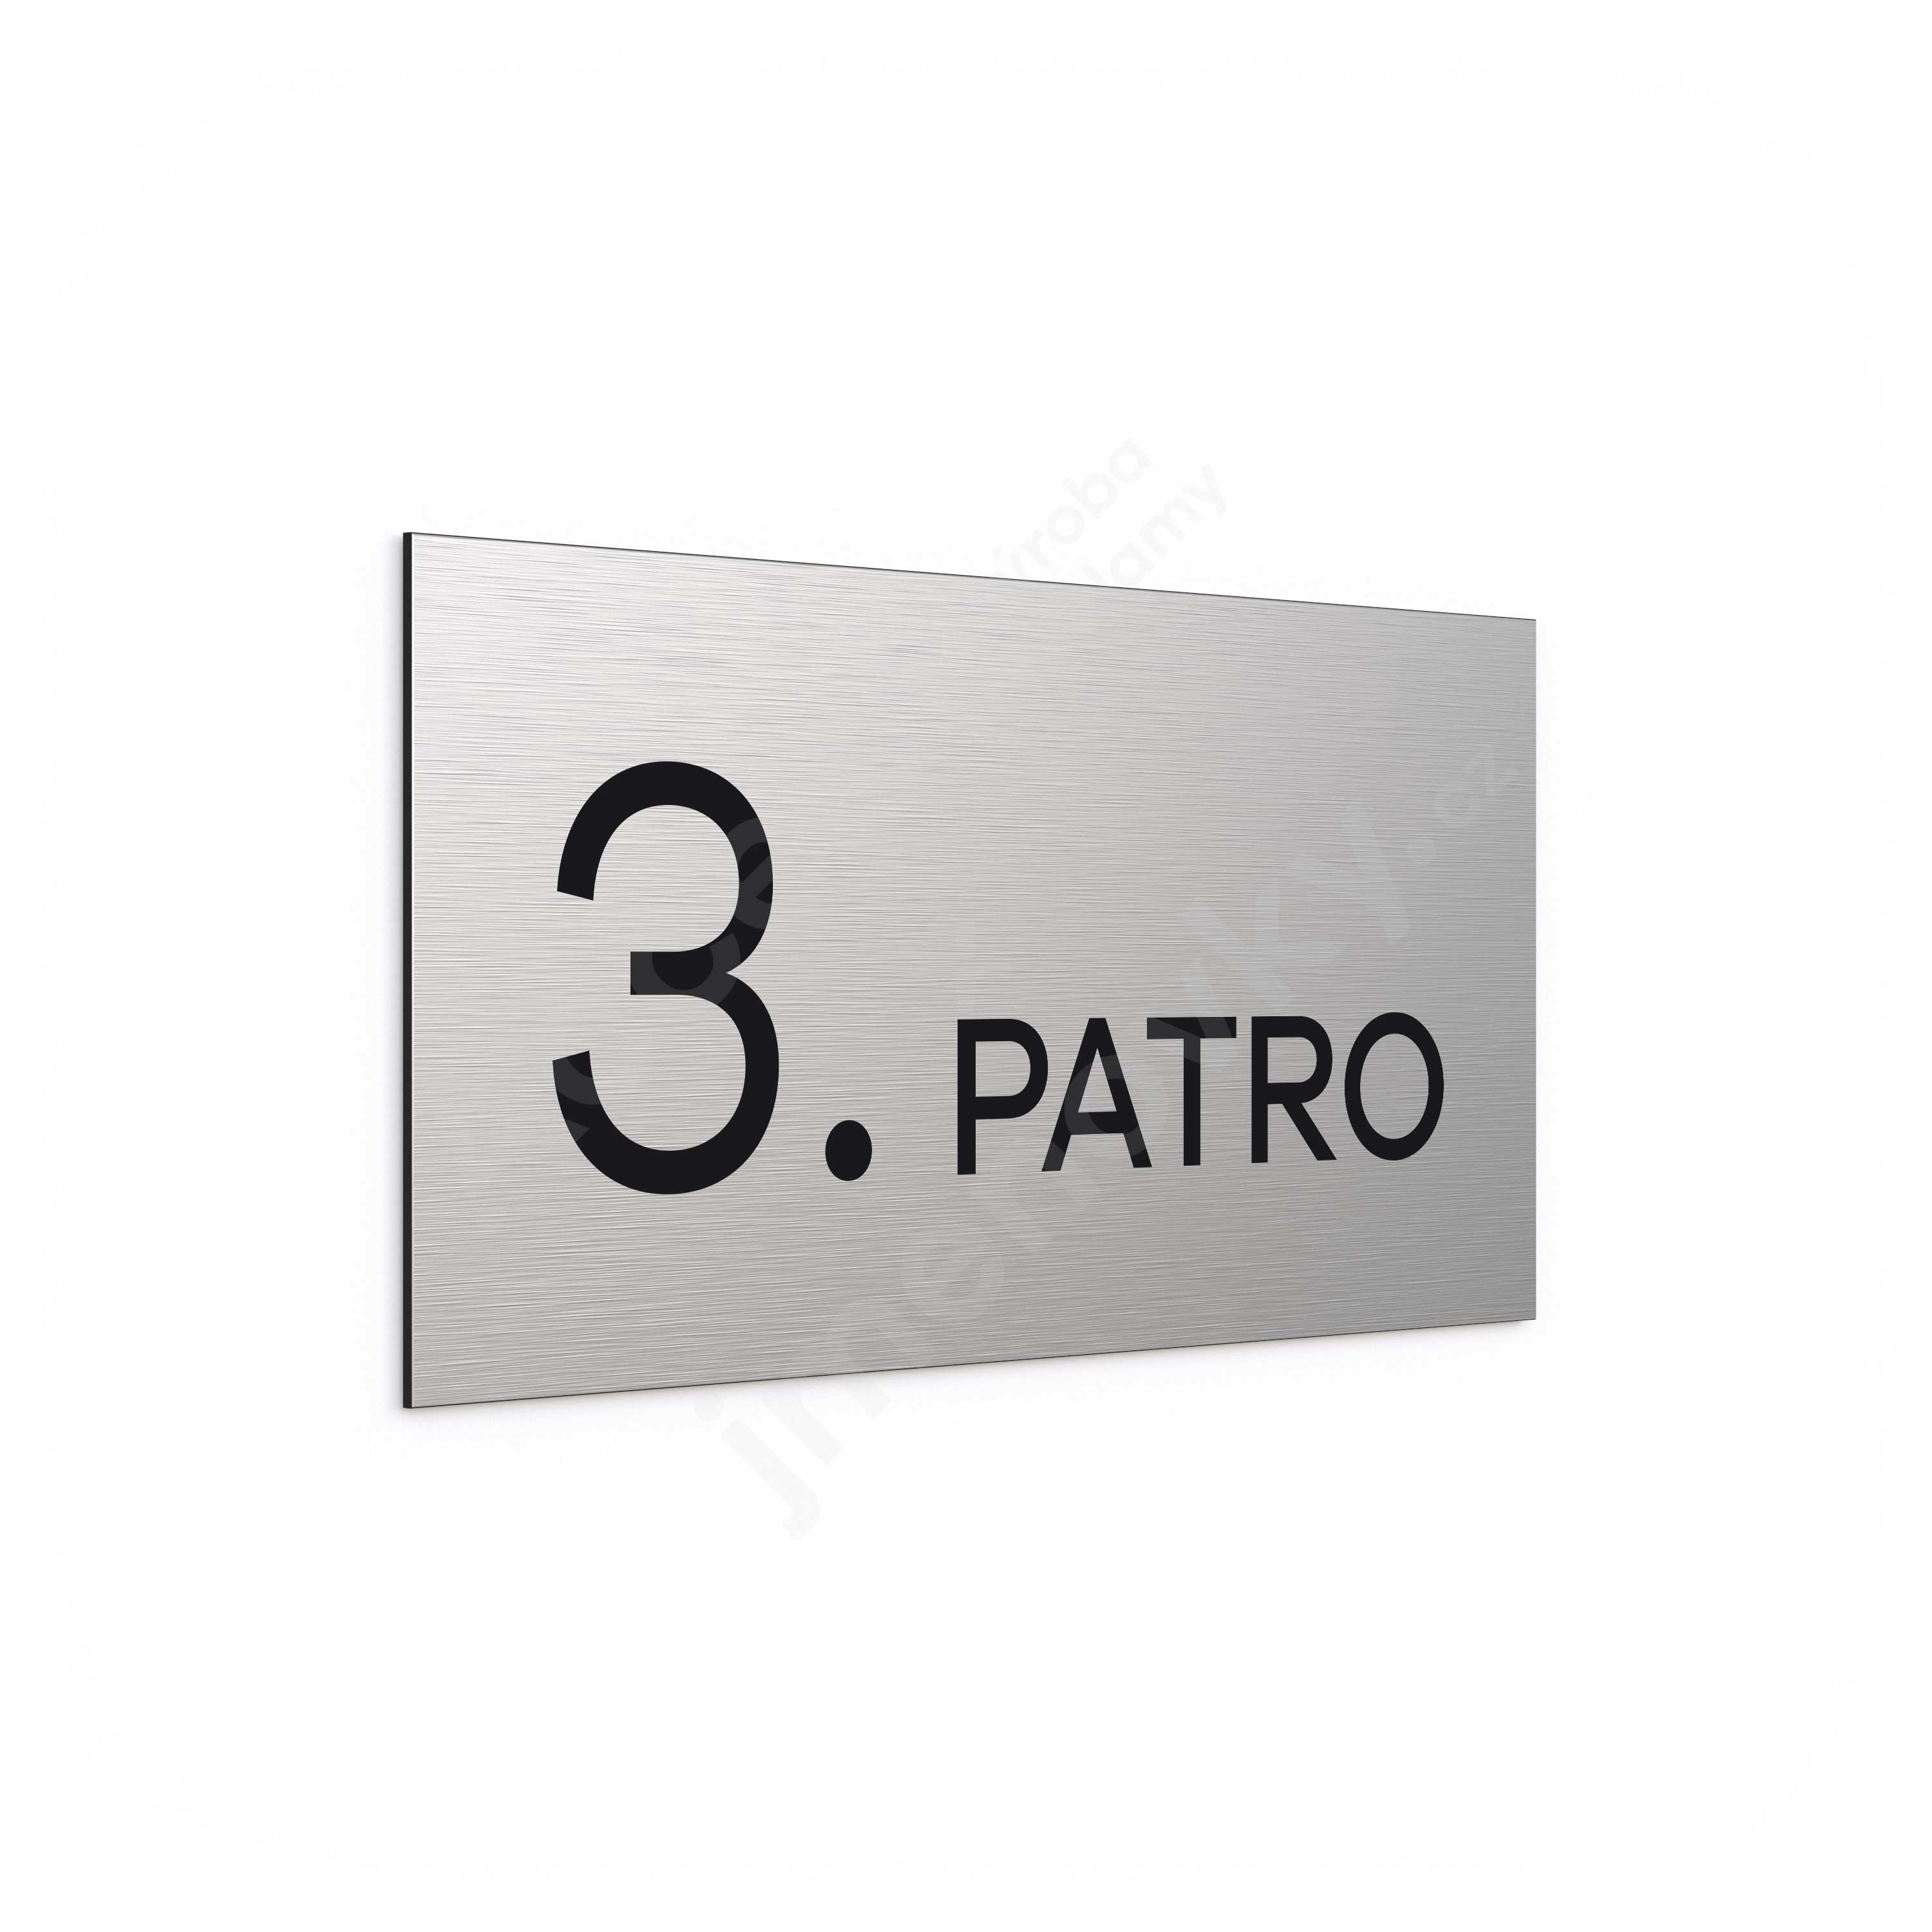 Oznaen podla "3. PATRO" (300 x 150 mm)